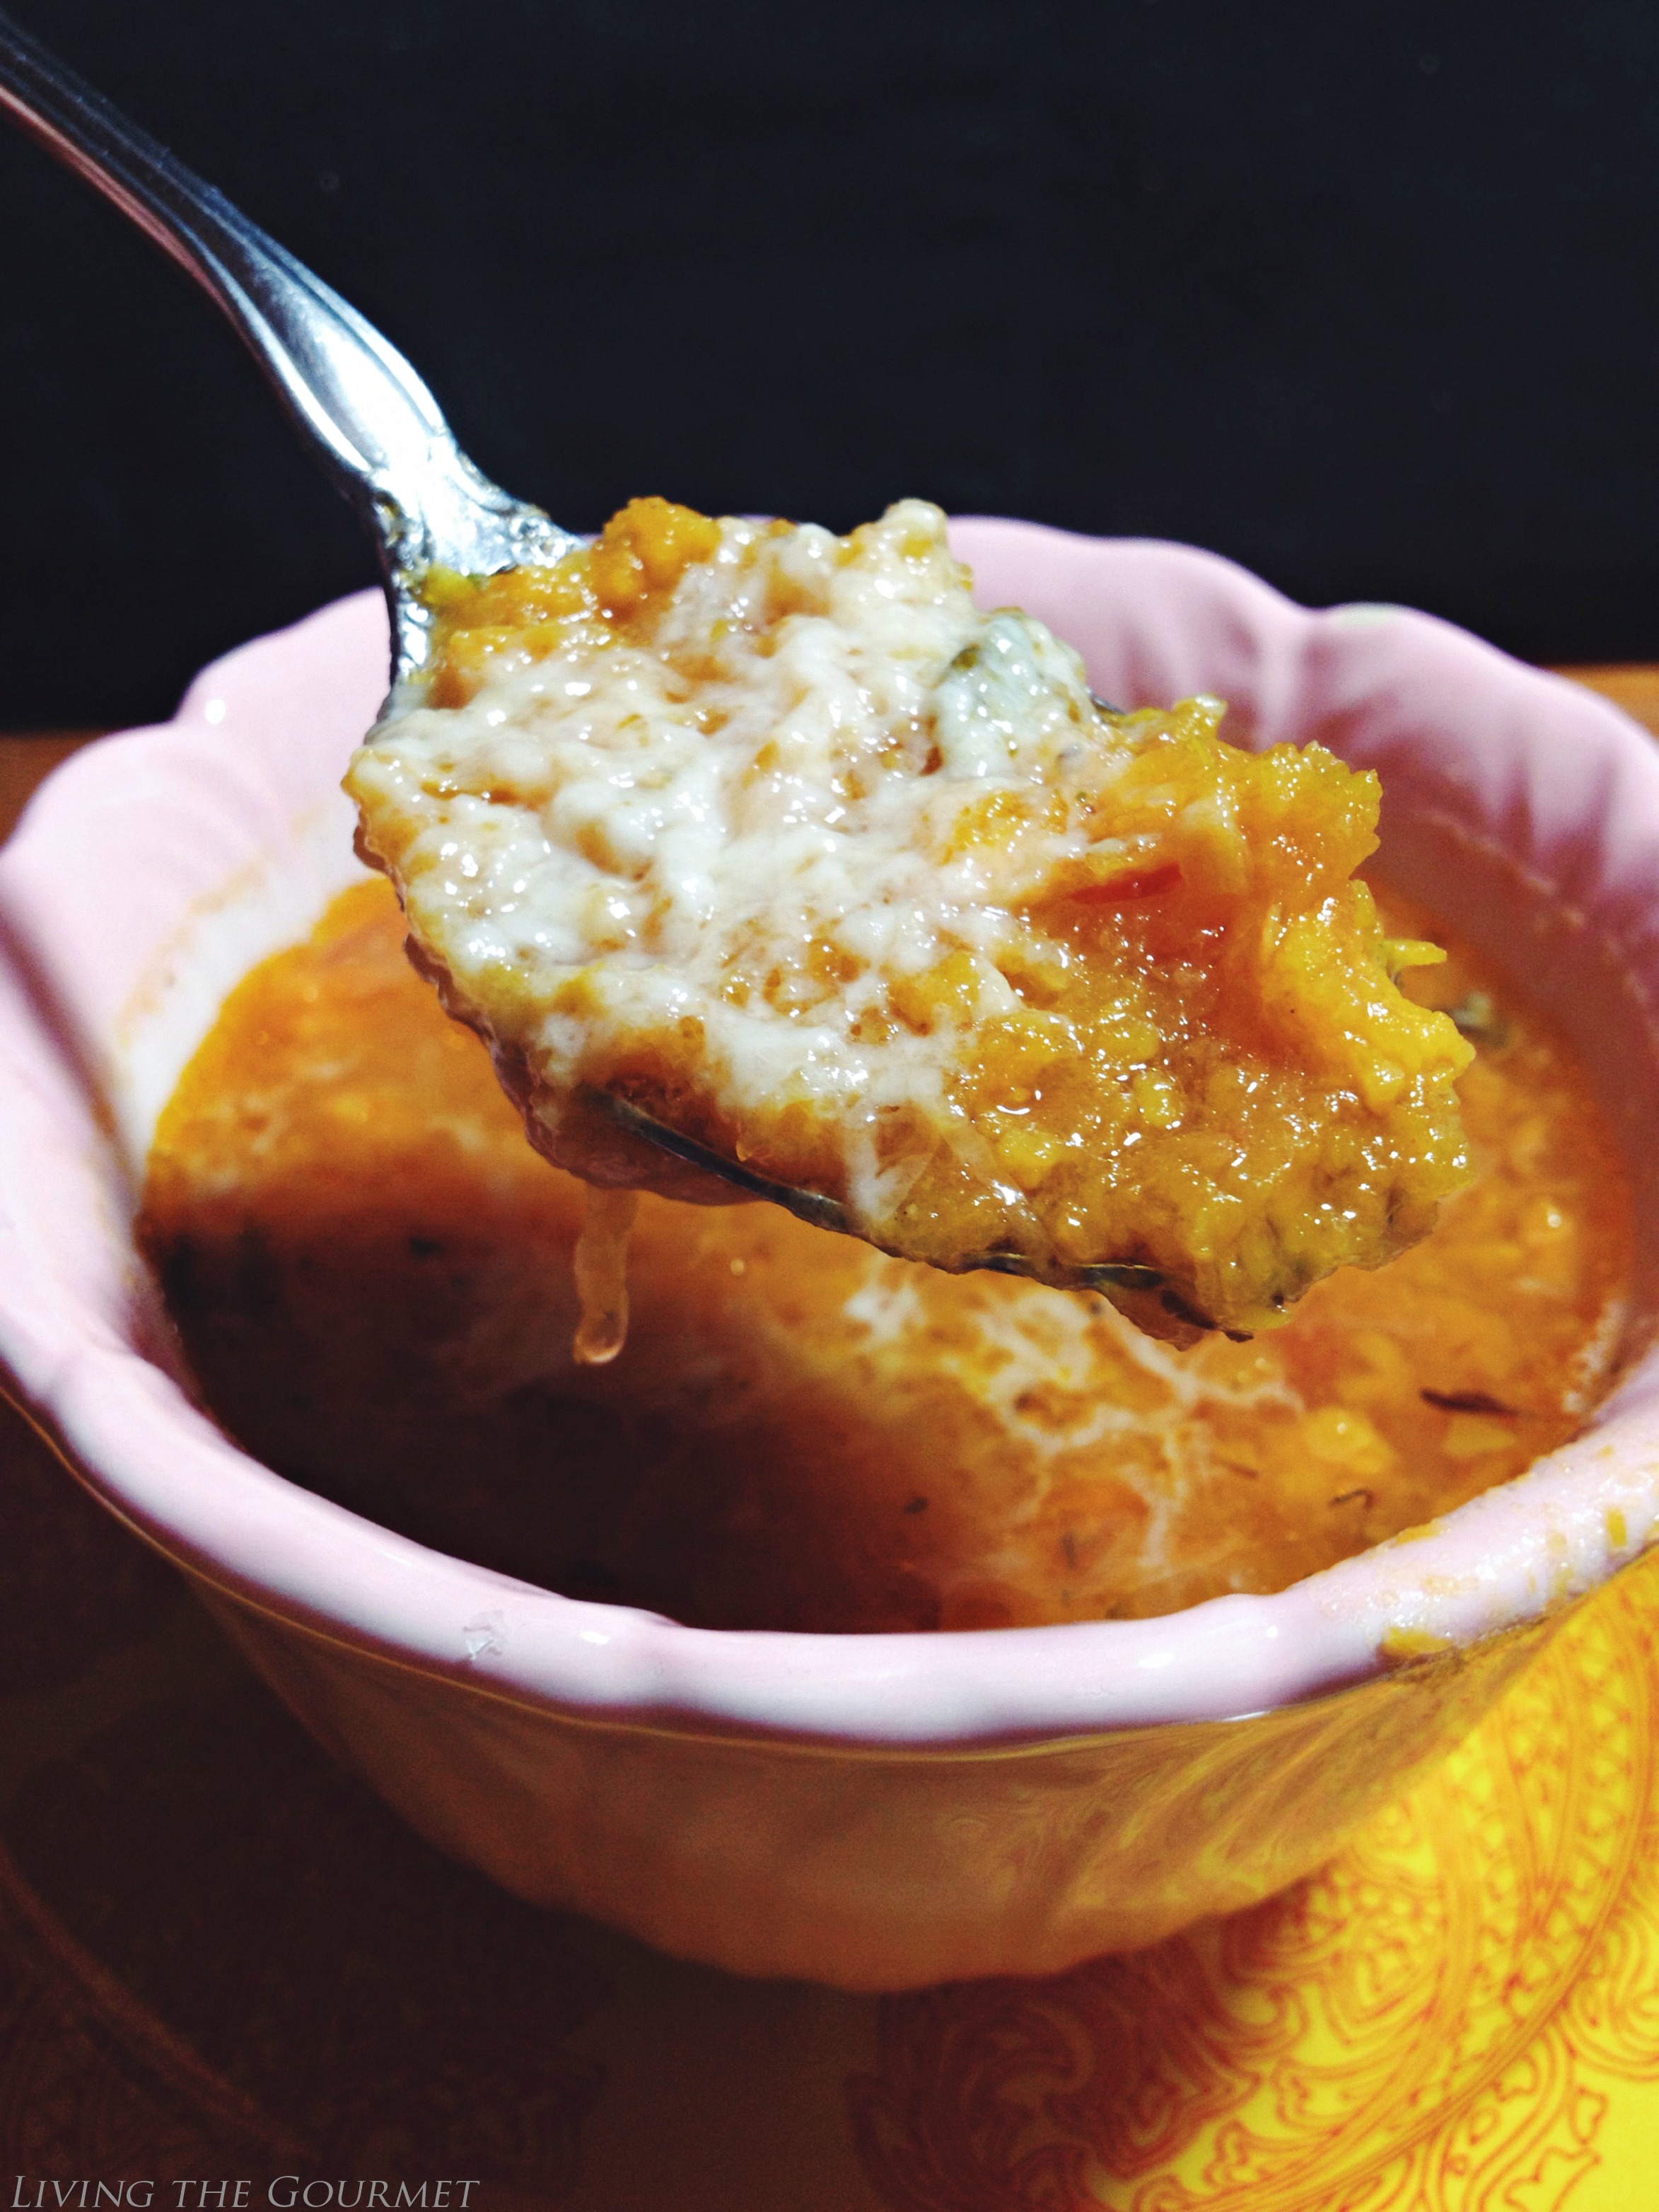 Living the Gourmet: Sweet Potato & Jalapeño Soup